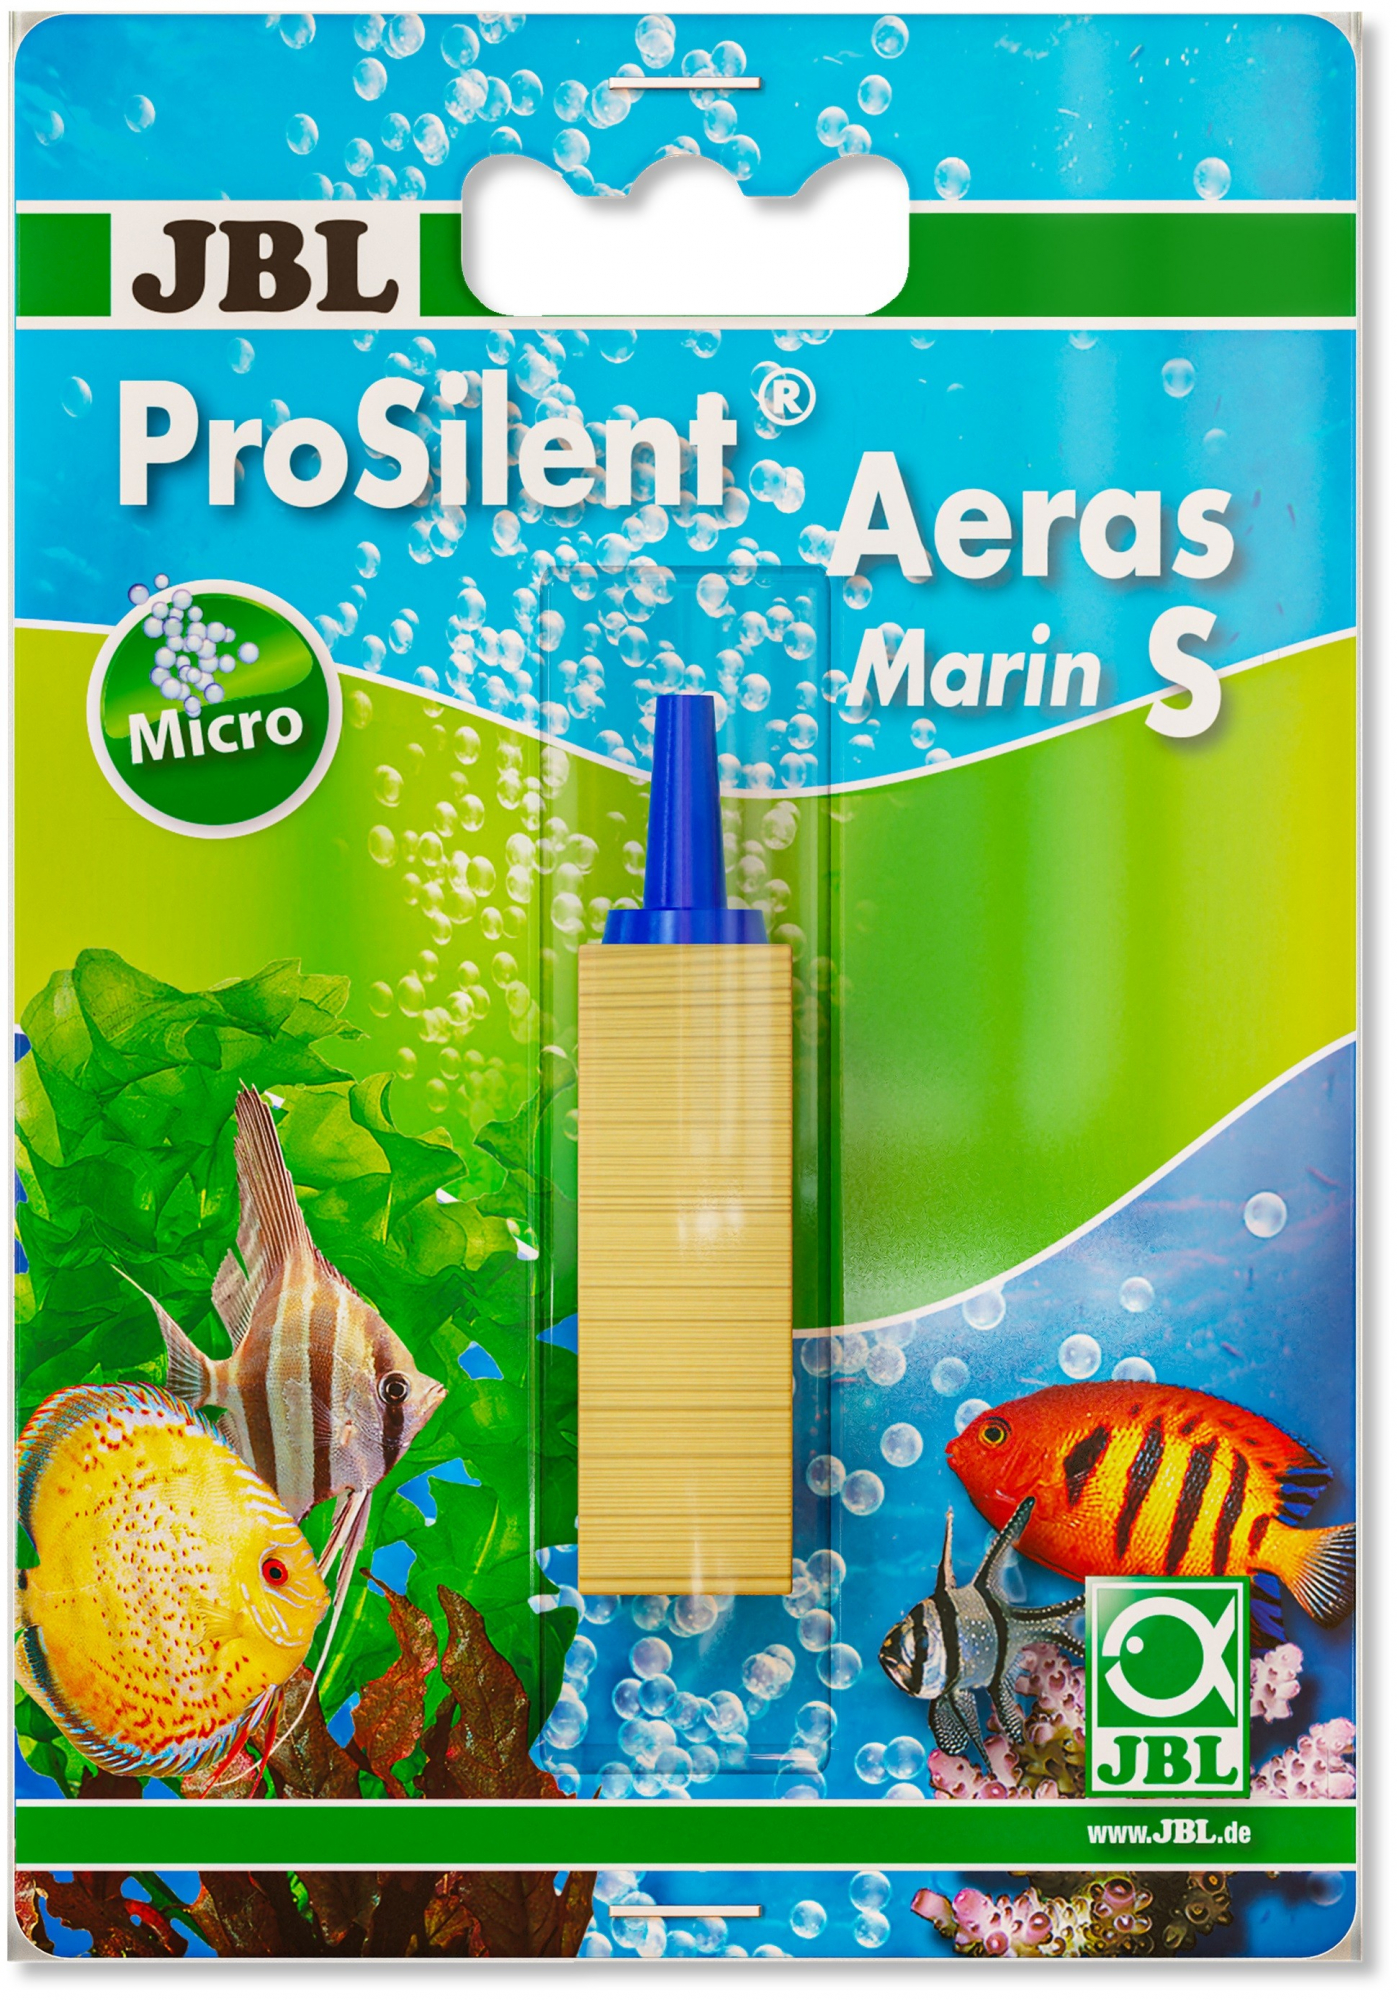 JBL ProSilent Aeras Marin, Diffuseur d'air en bois pour aquariums d'eau de mer